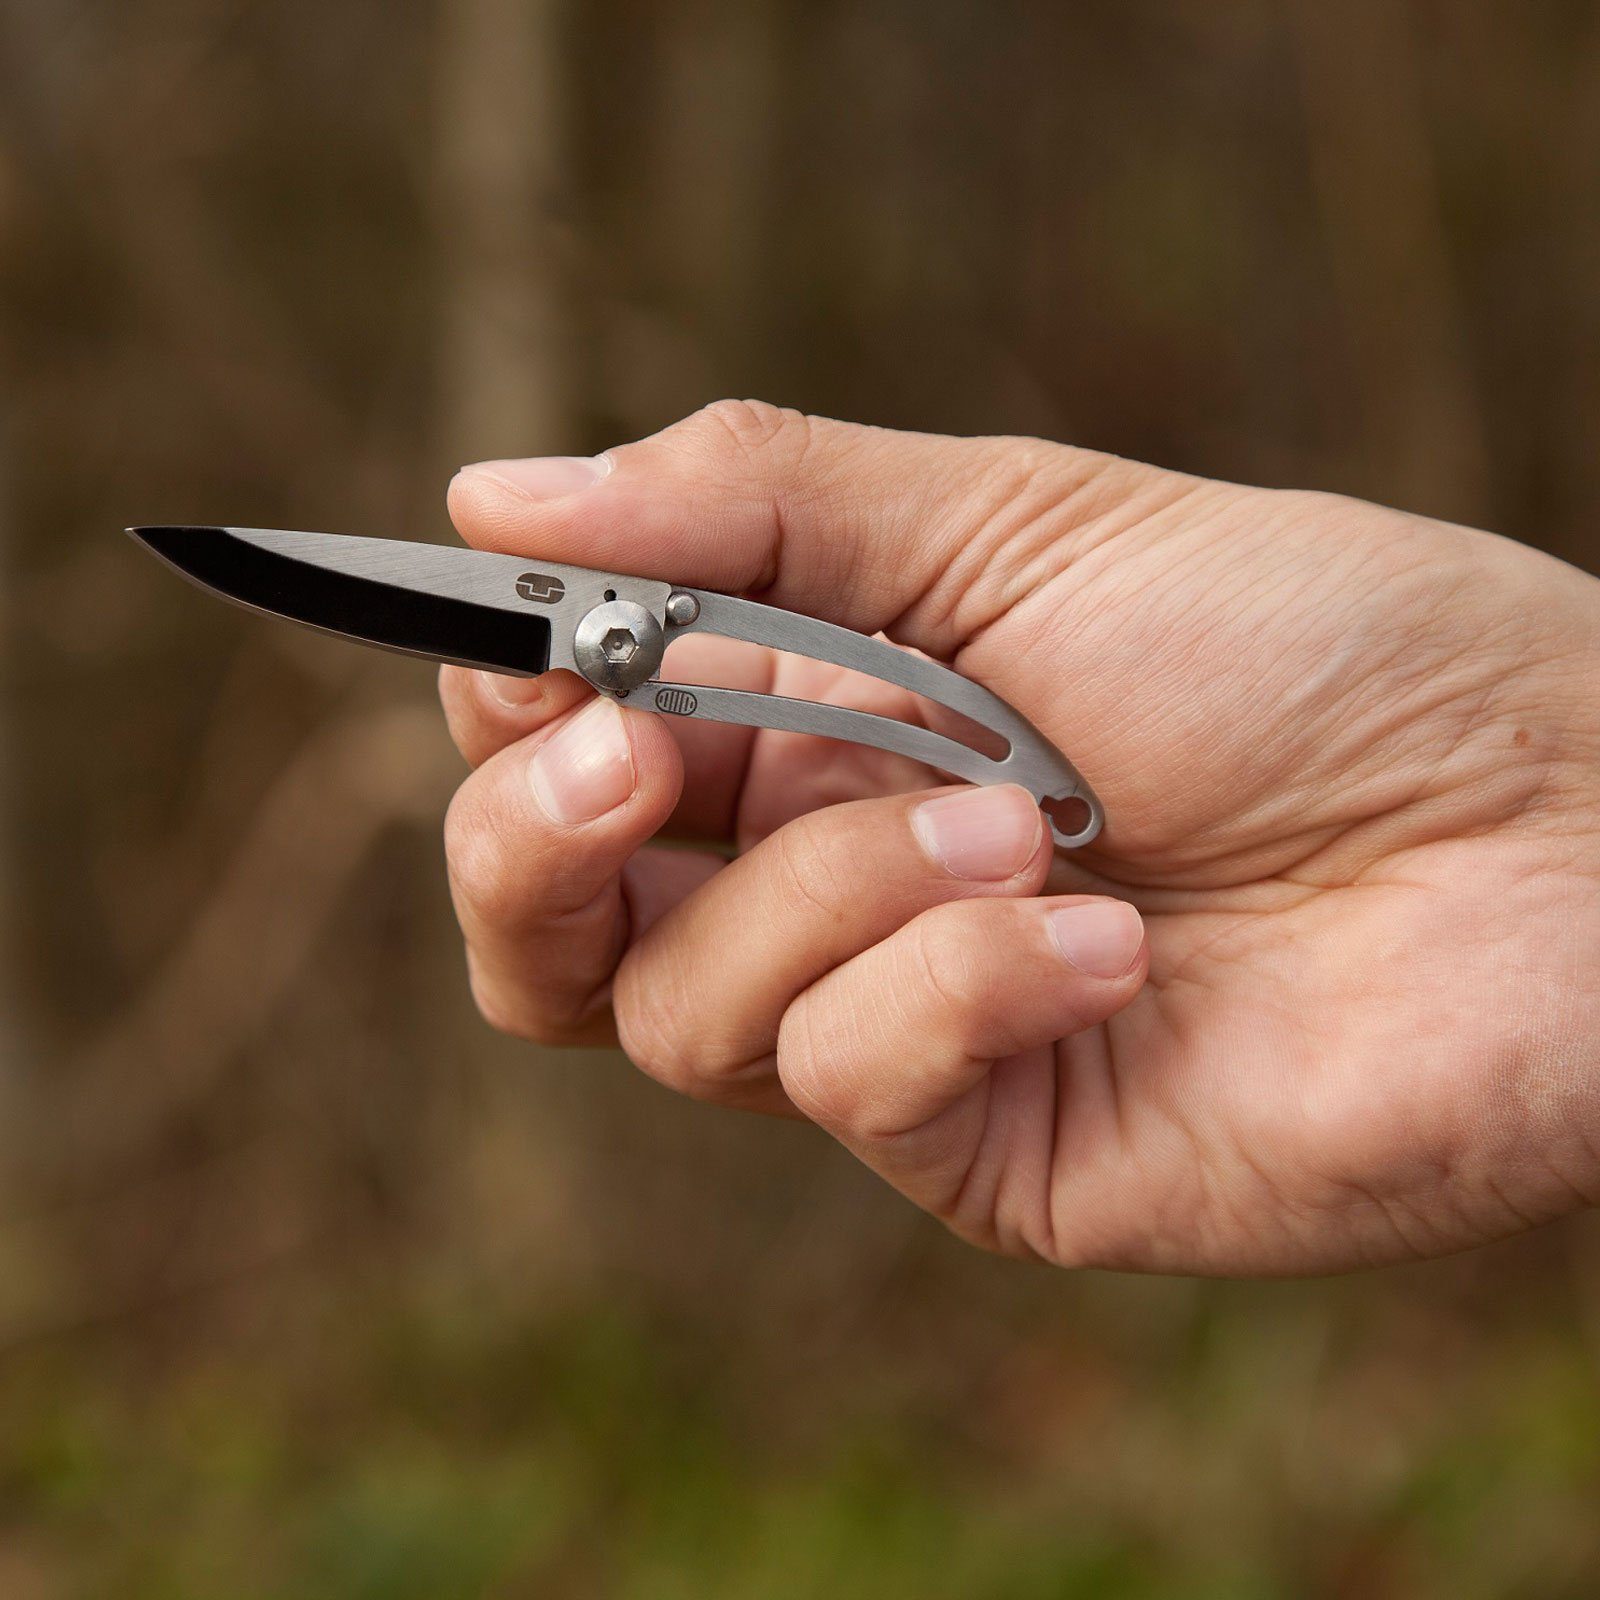 True Utility Taschenmesser Klappmesser Taschenmesser, BARE Mini Messer Schlüsselanhänger 16 g